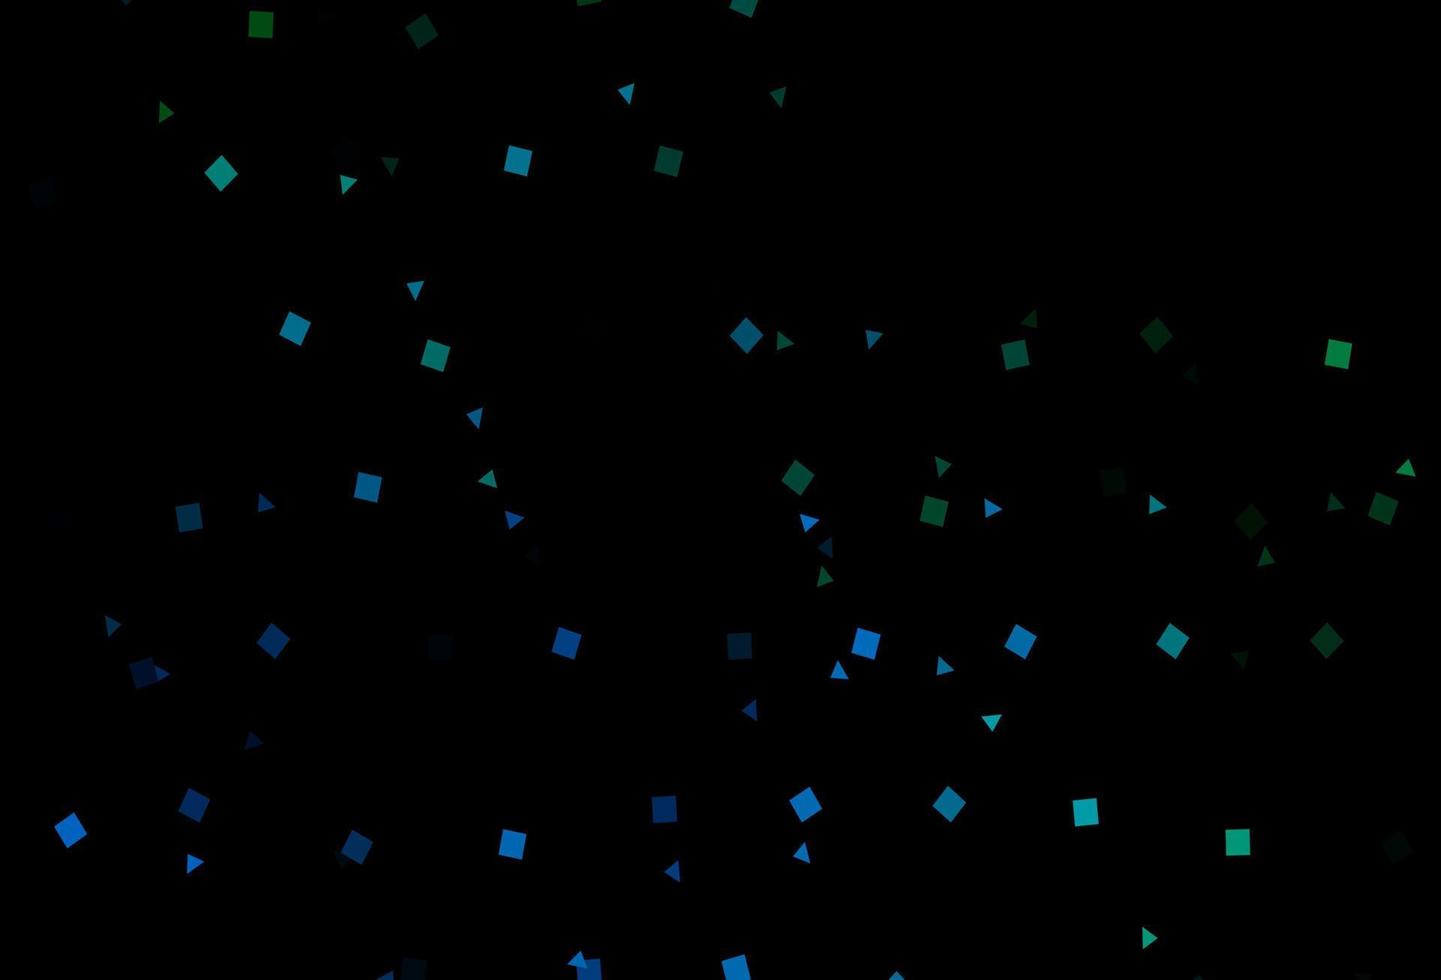 dunkelblaues, grünes Vektorlayout mit Kreisen, Linien, Rechtecken. vektor